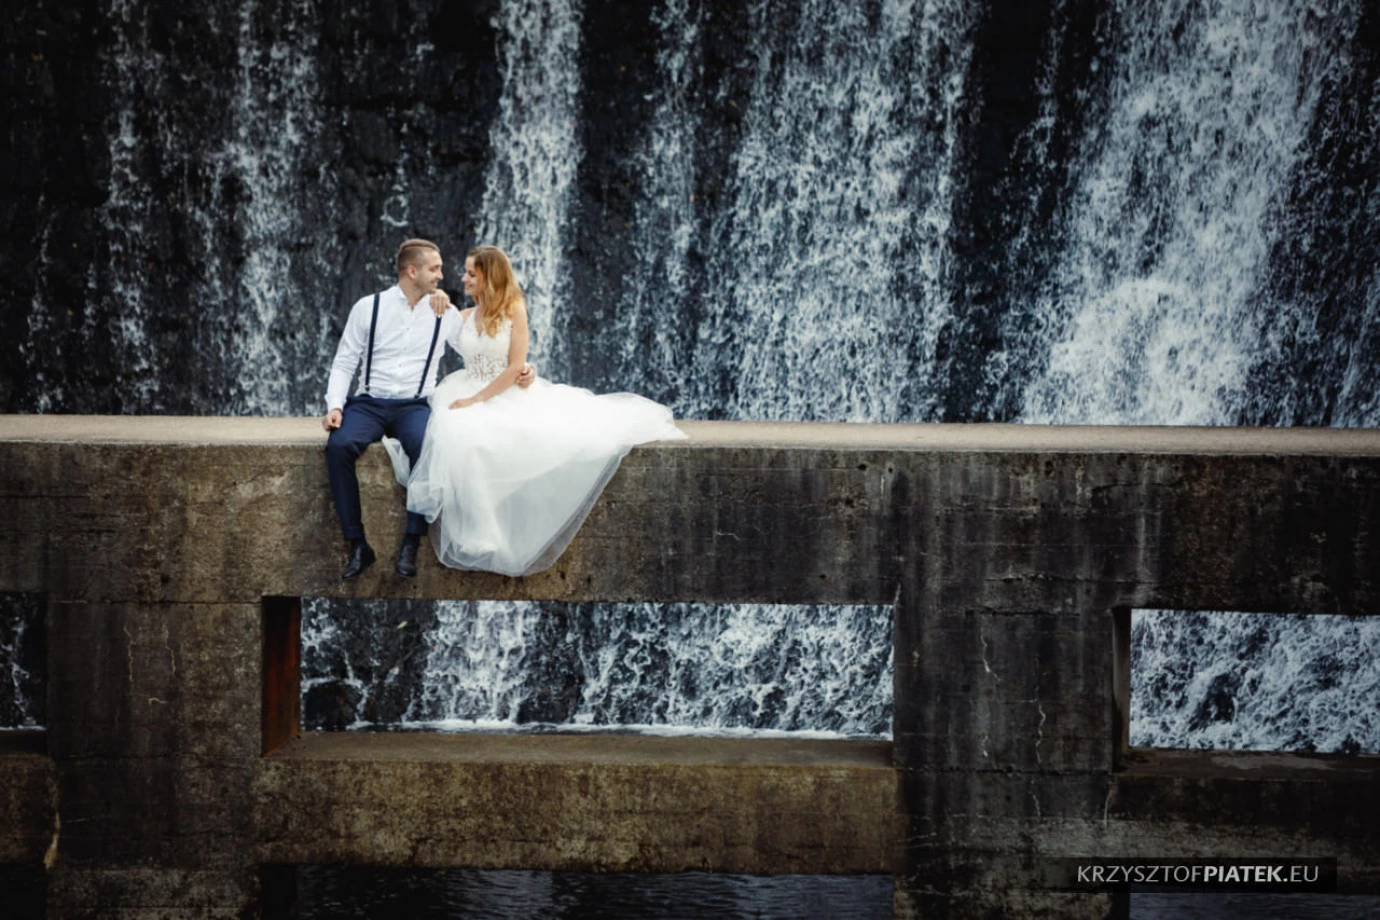 zdjęcia katowice fotograf krzysztof-piatek portfolio zdjecia slubne inspiracje wesele plener slubny sesja slubna